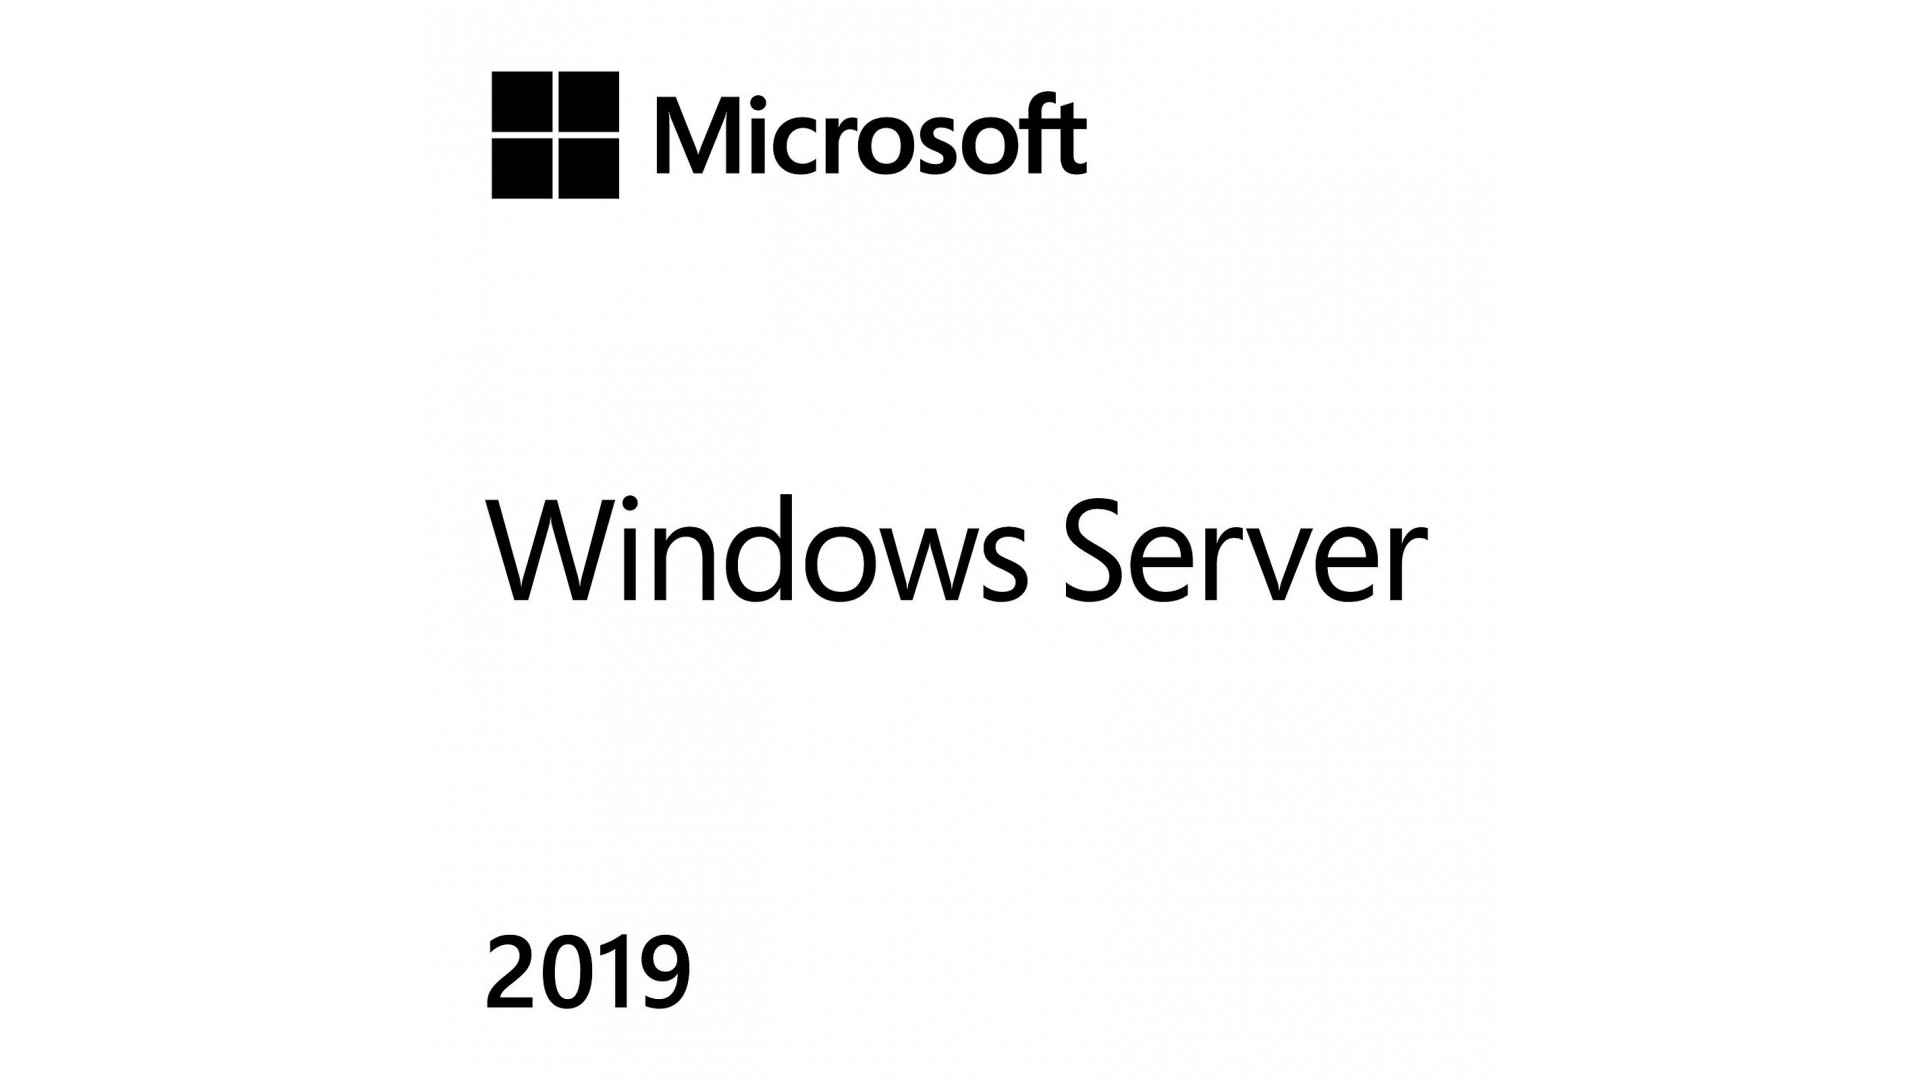 CAL User - Licence d'accès 5 utilisateurs pour Windows Server 2019